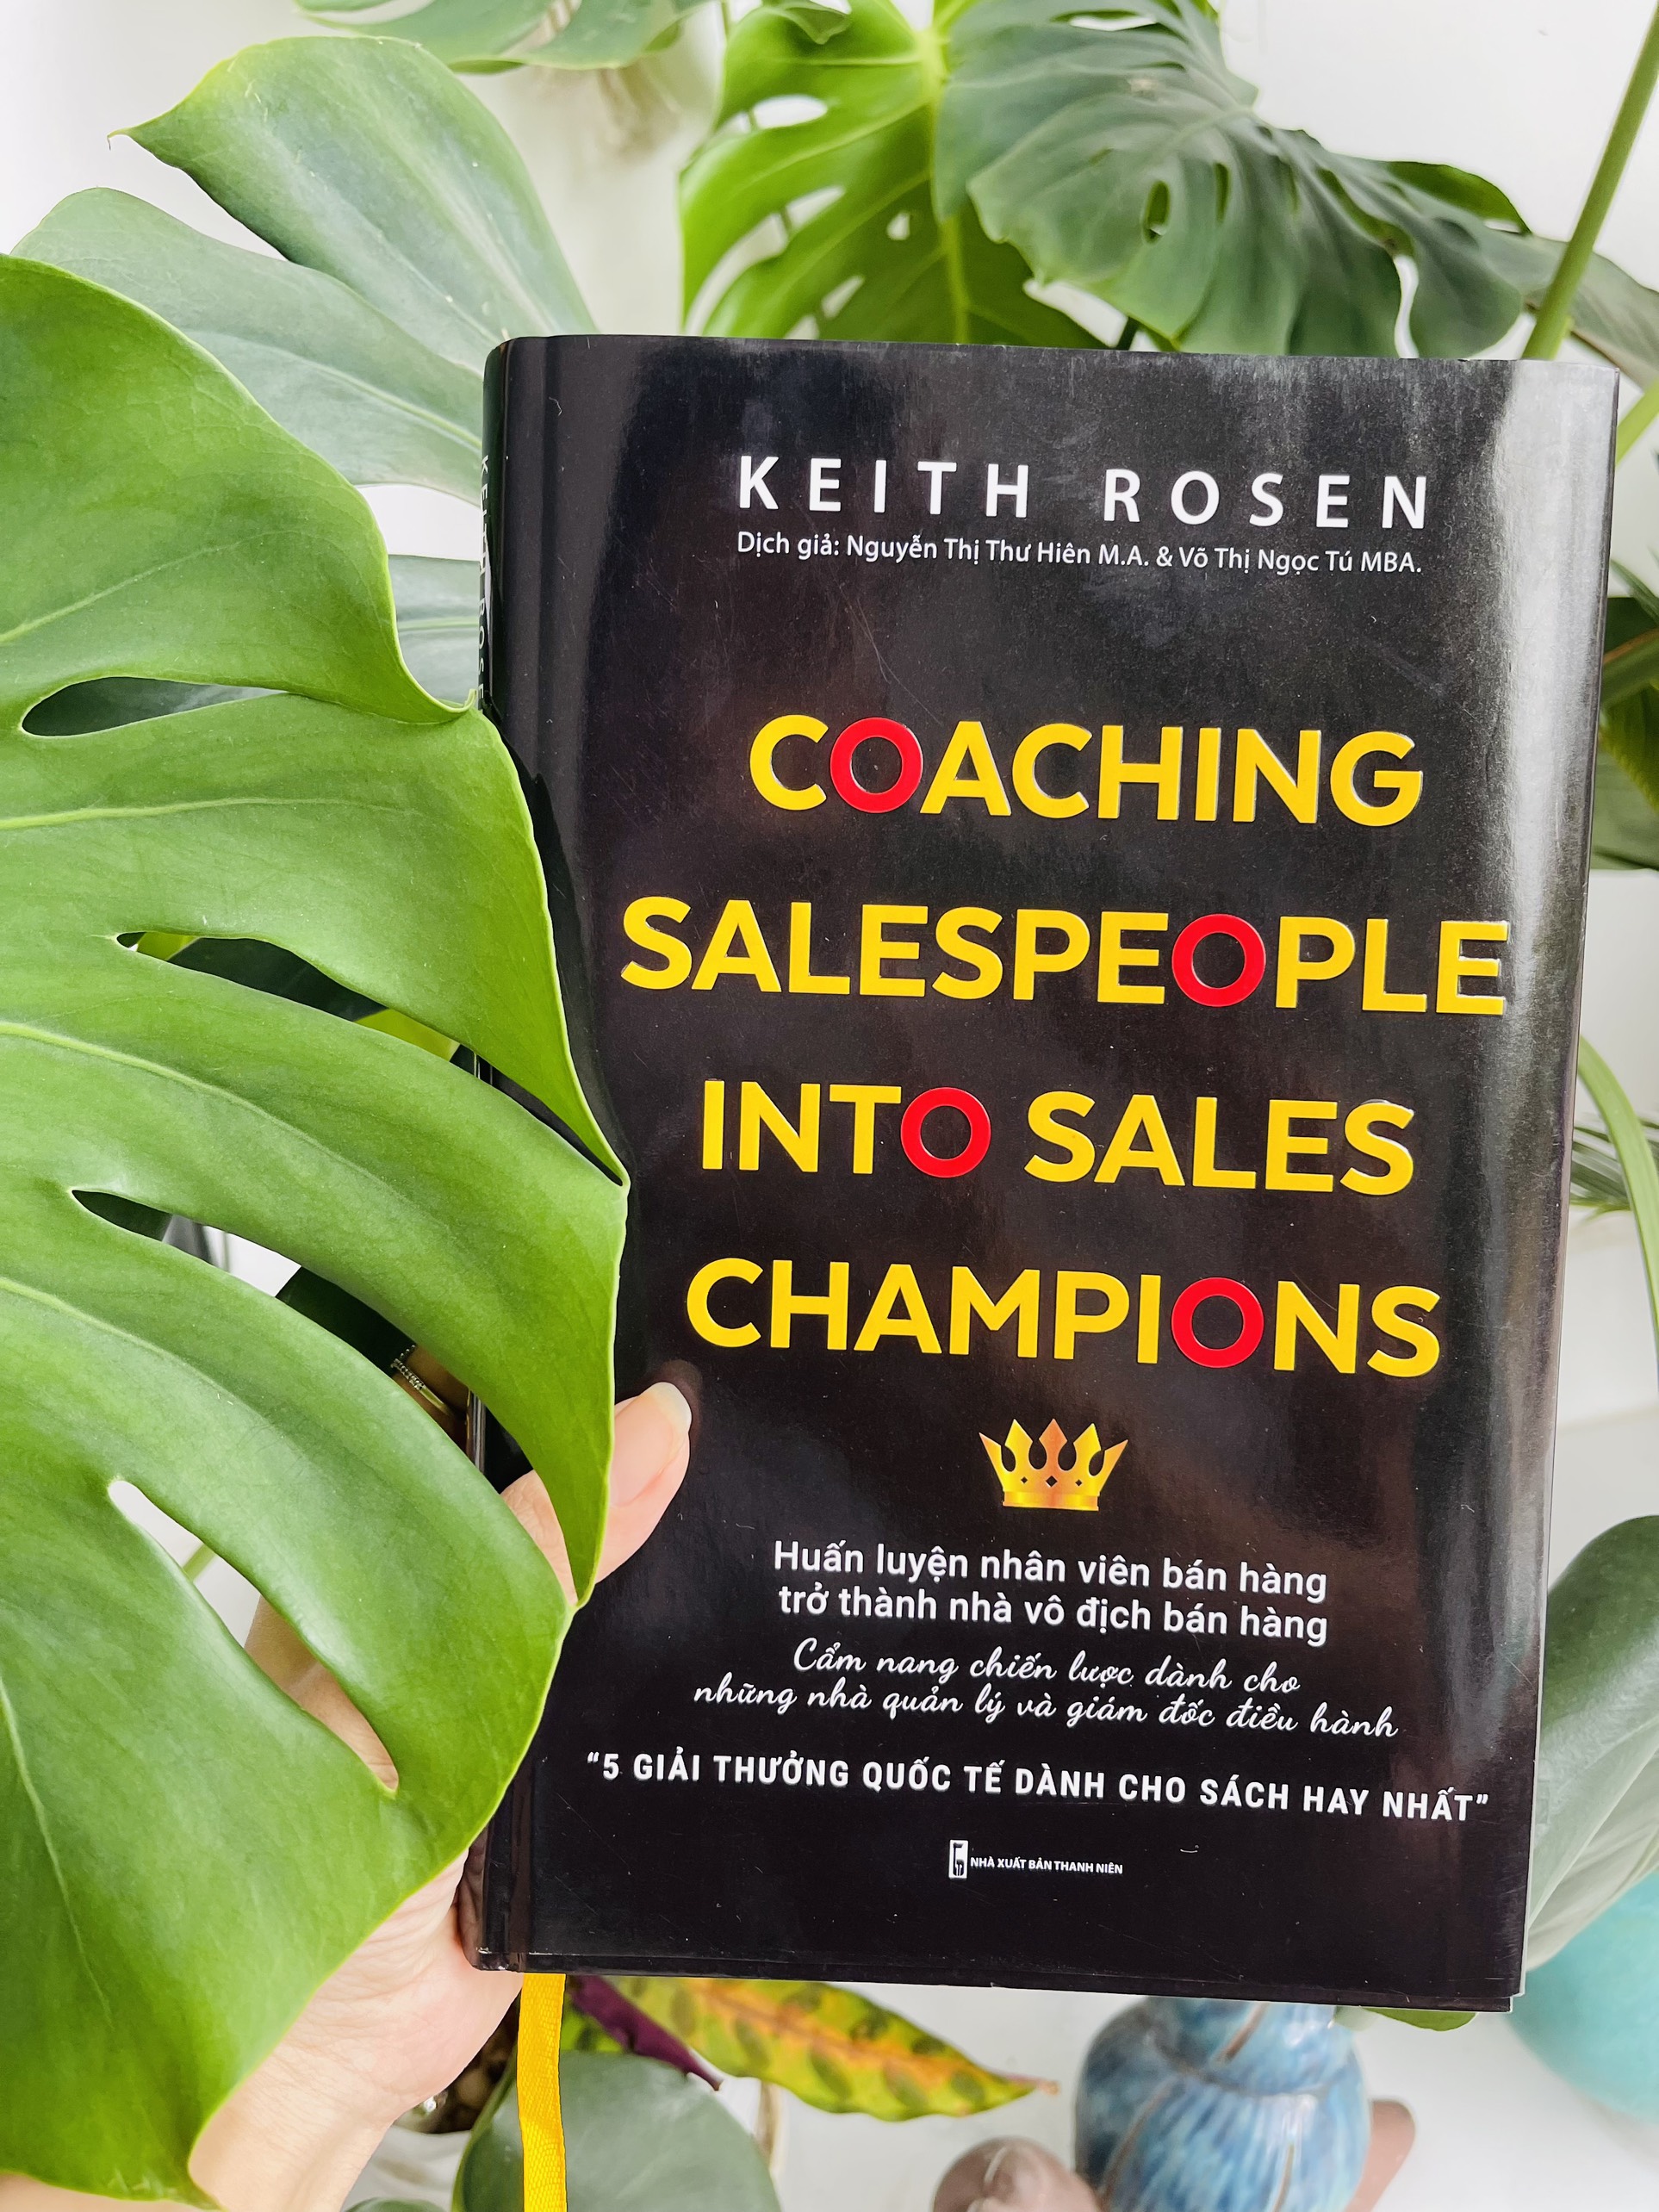 COACHING SALES PEOPLE INTO SALES CHAMPIONS - Huấn luyện nhân viên bán hàng trở thành nhà vô địch bán hàng